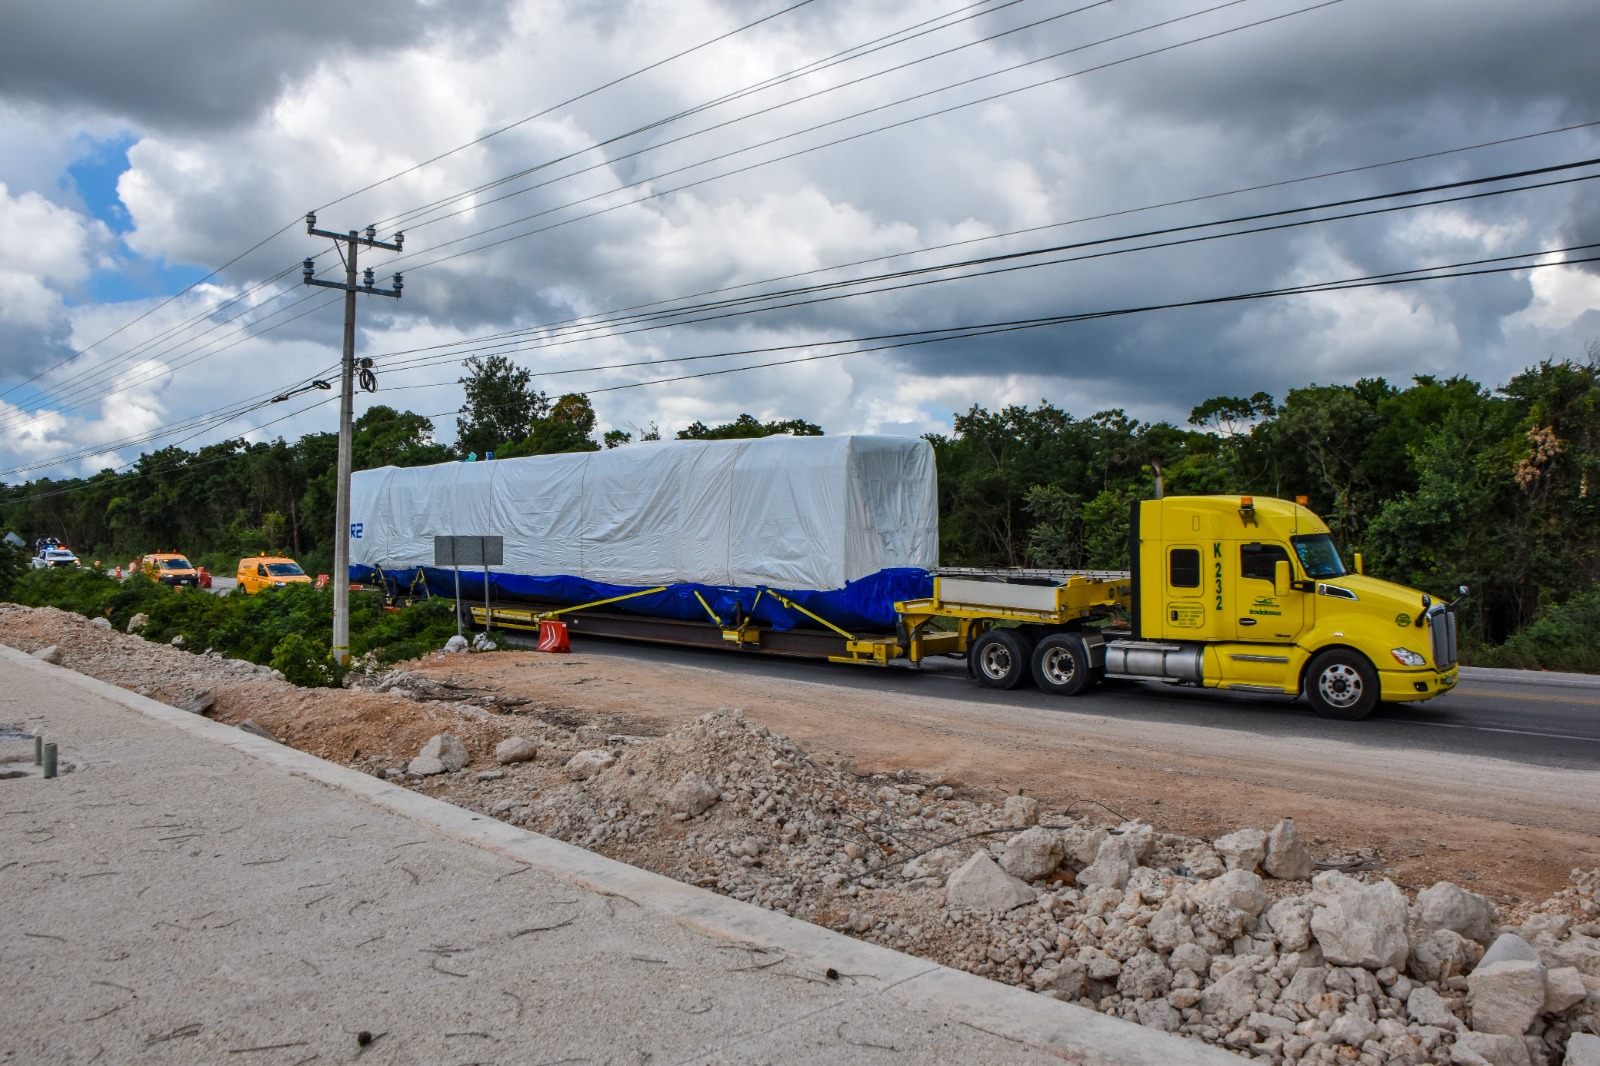 Arriba segundo convoy del Tren Maya a la estación Cancún Aeropuerto